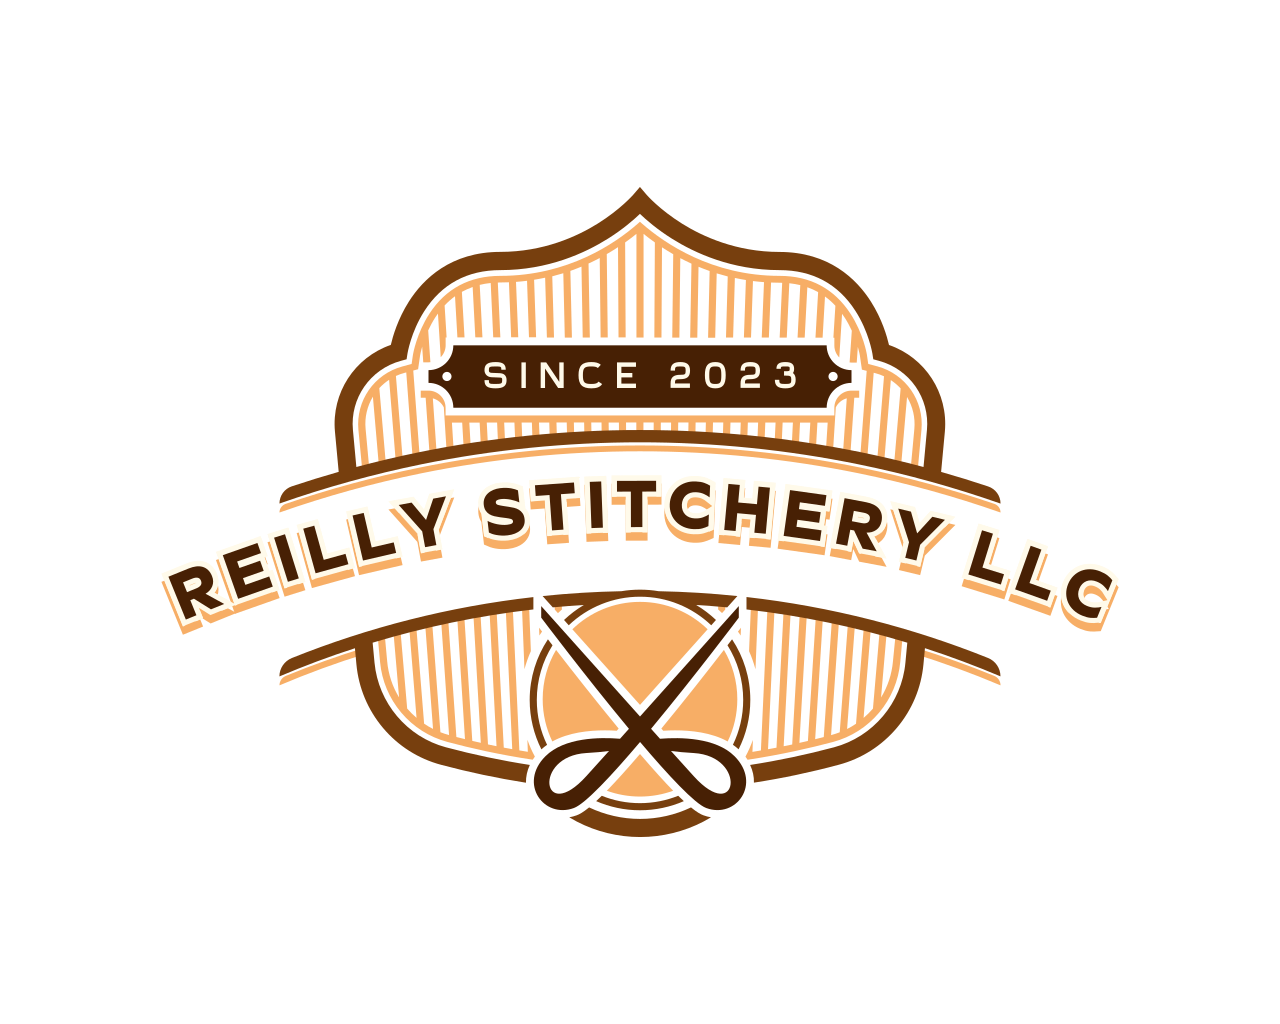 Reilly Stitchery